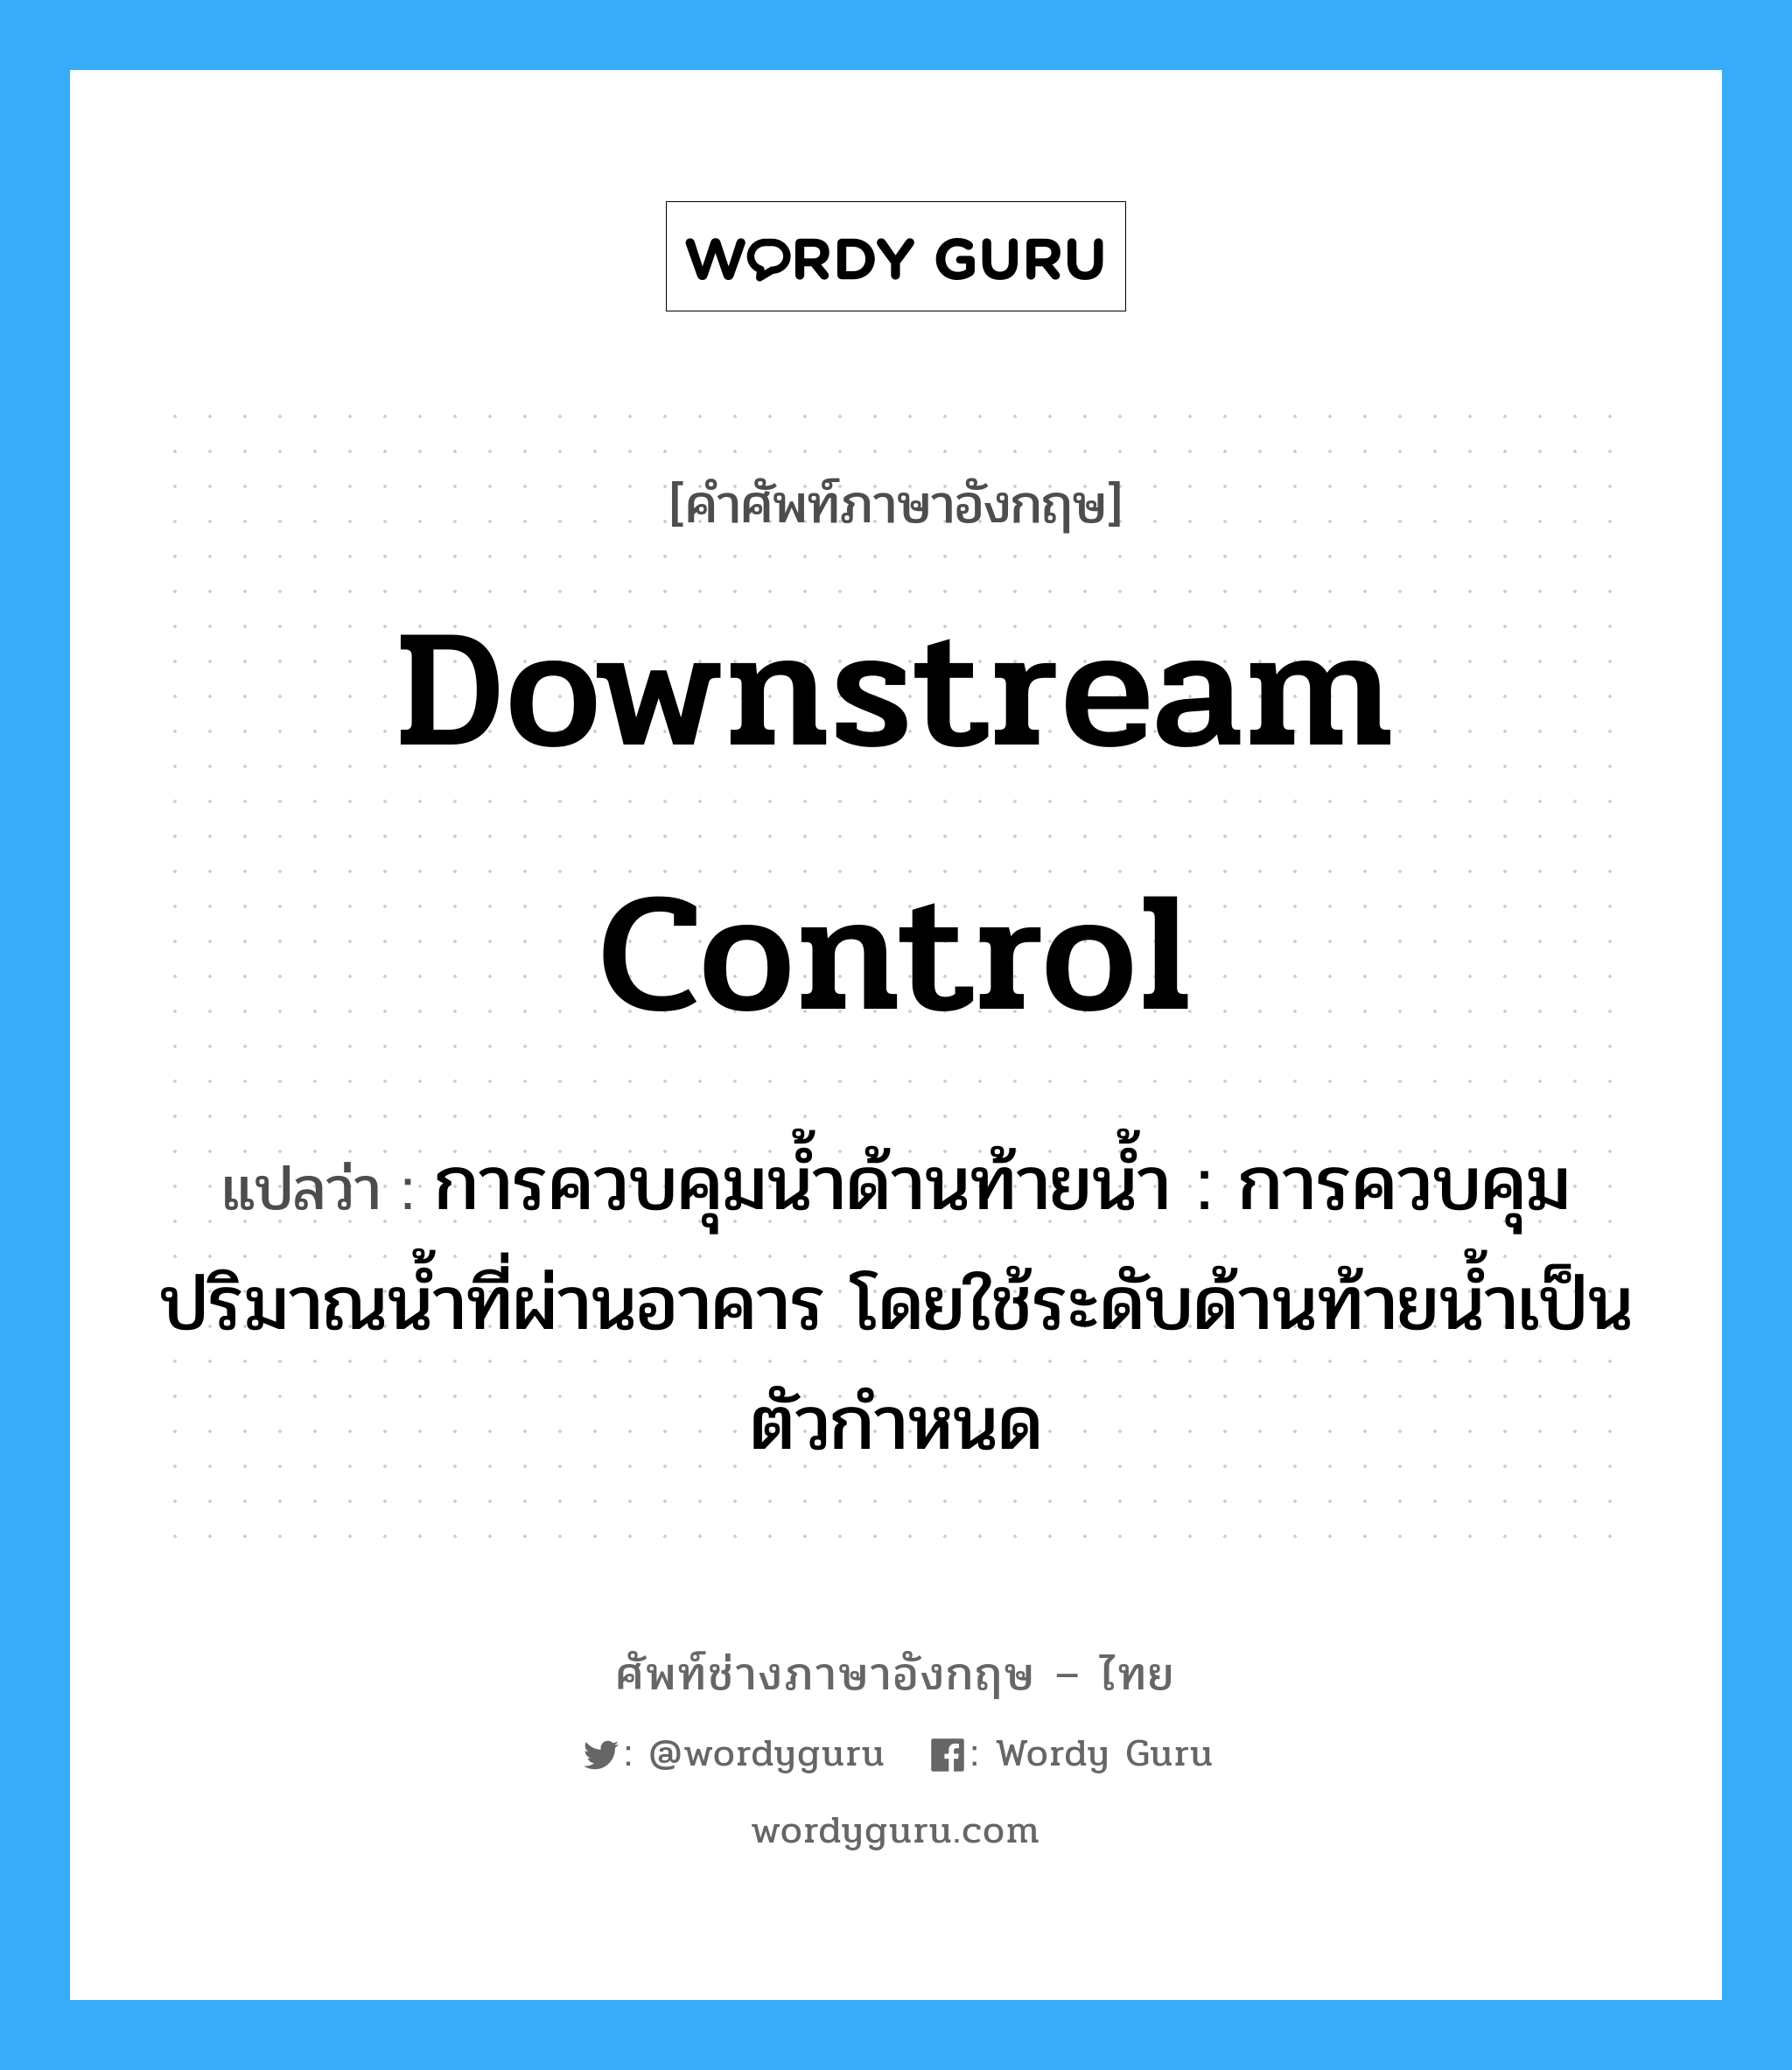 downstream control แปลว่า?, คำศัพท์ช่างภาษาอังกฤษ - ไทย downstream control คำศัพท์ภาษาอังกฤษ downstream control แปลว่า การควบคุมน้ำด้านท้ายน้ำ : การควบคุมปริมาณน้ำที่ผ่านอาคาร โดยใช้ระดับด้านท้ายน้ำเป็นตัวกำหนด